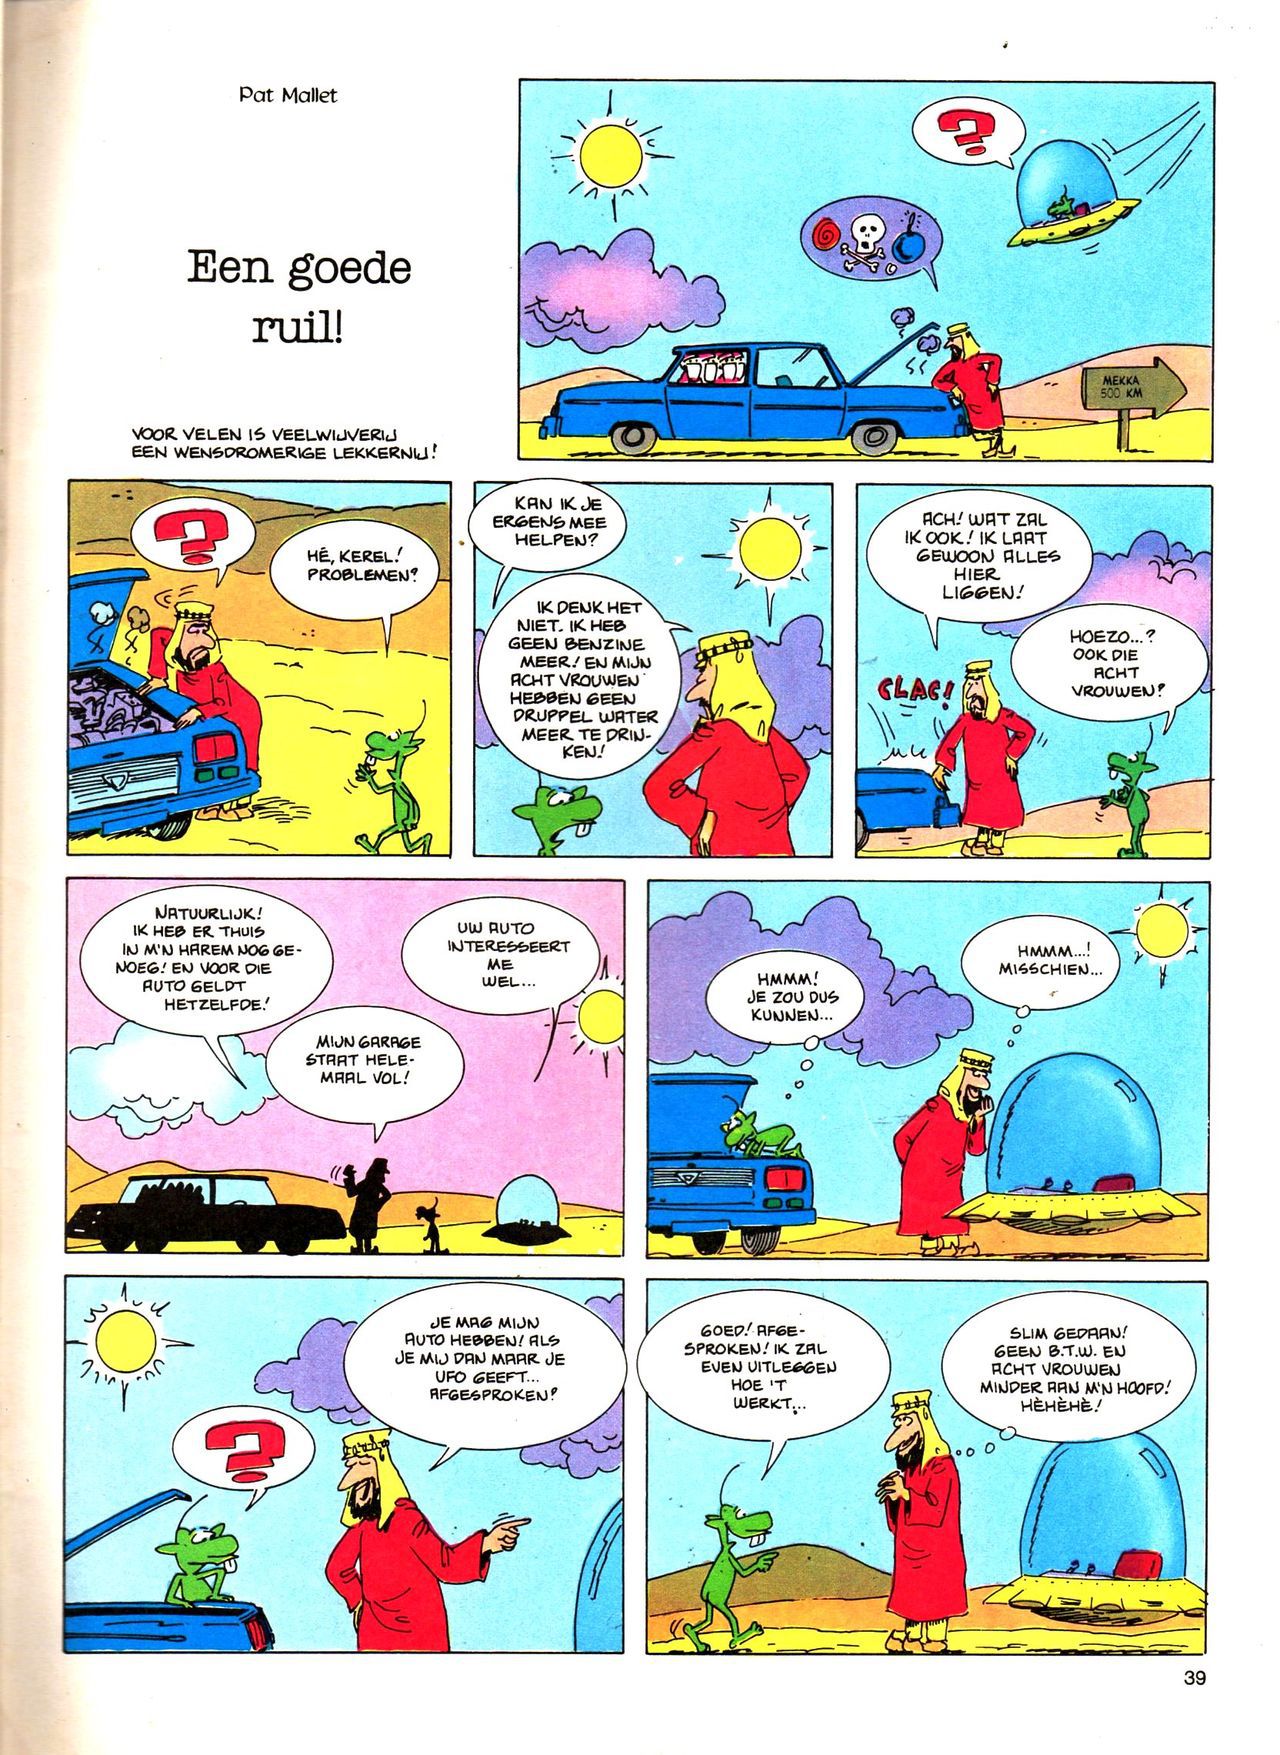 Het Is Groen En Het.. - 04 - Mag Ik Die Ballen.. OH, PARDON! (Dutch) Een oude humoristische serie van Pat Mallet 39